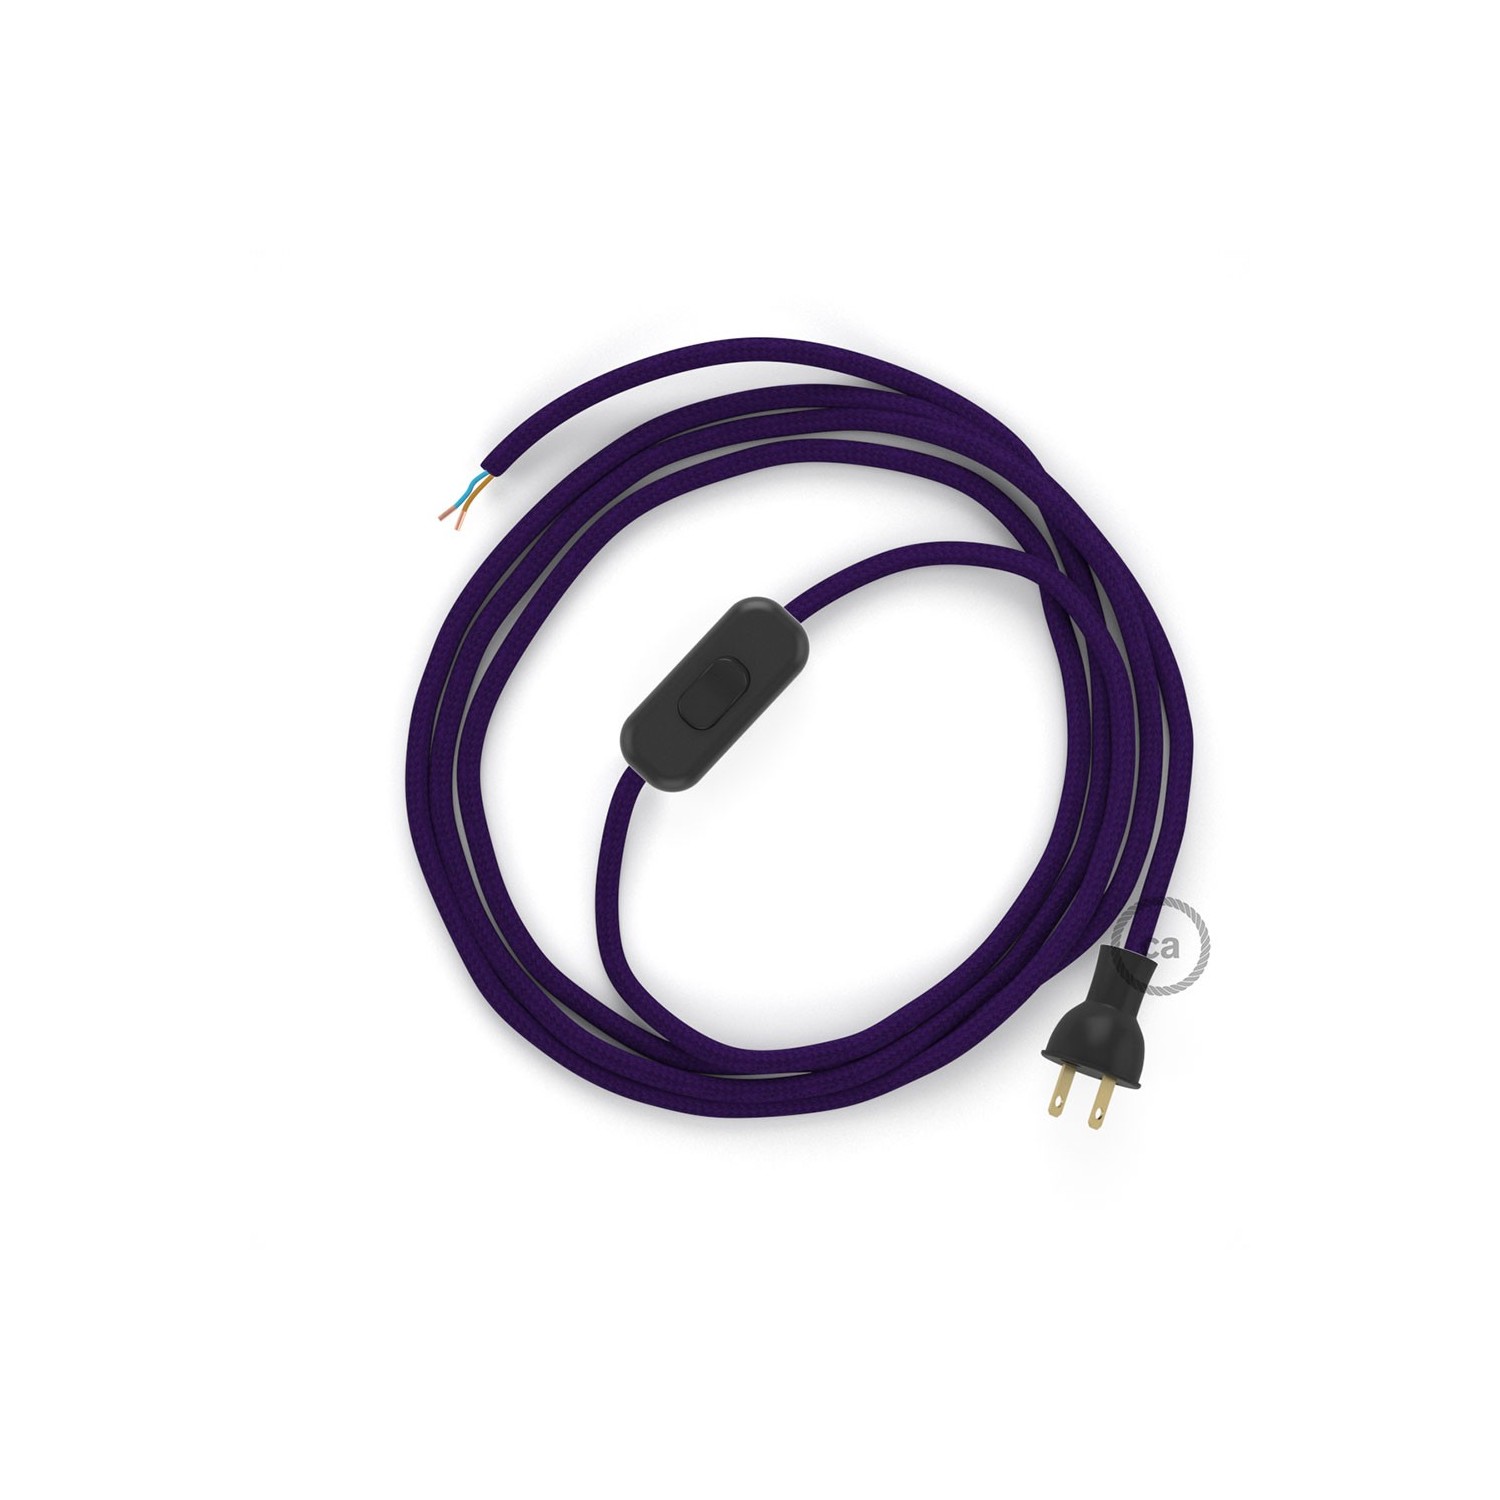 Cableado para lámpara de mesa, cable RM14 Rayón Púrpura 1,8 m. Elige el color de la clavija y del interruptor!